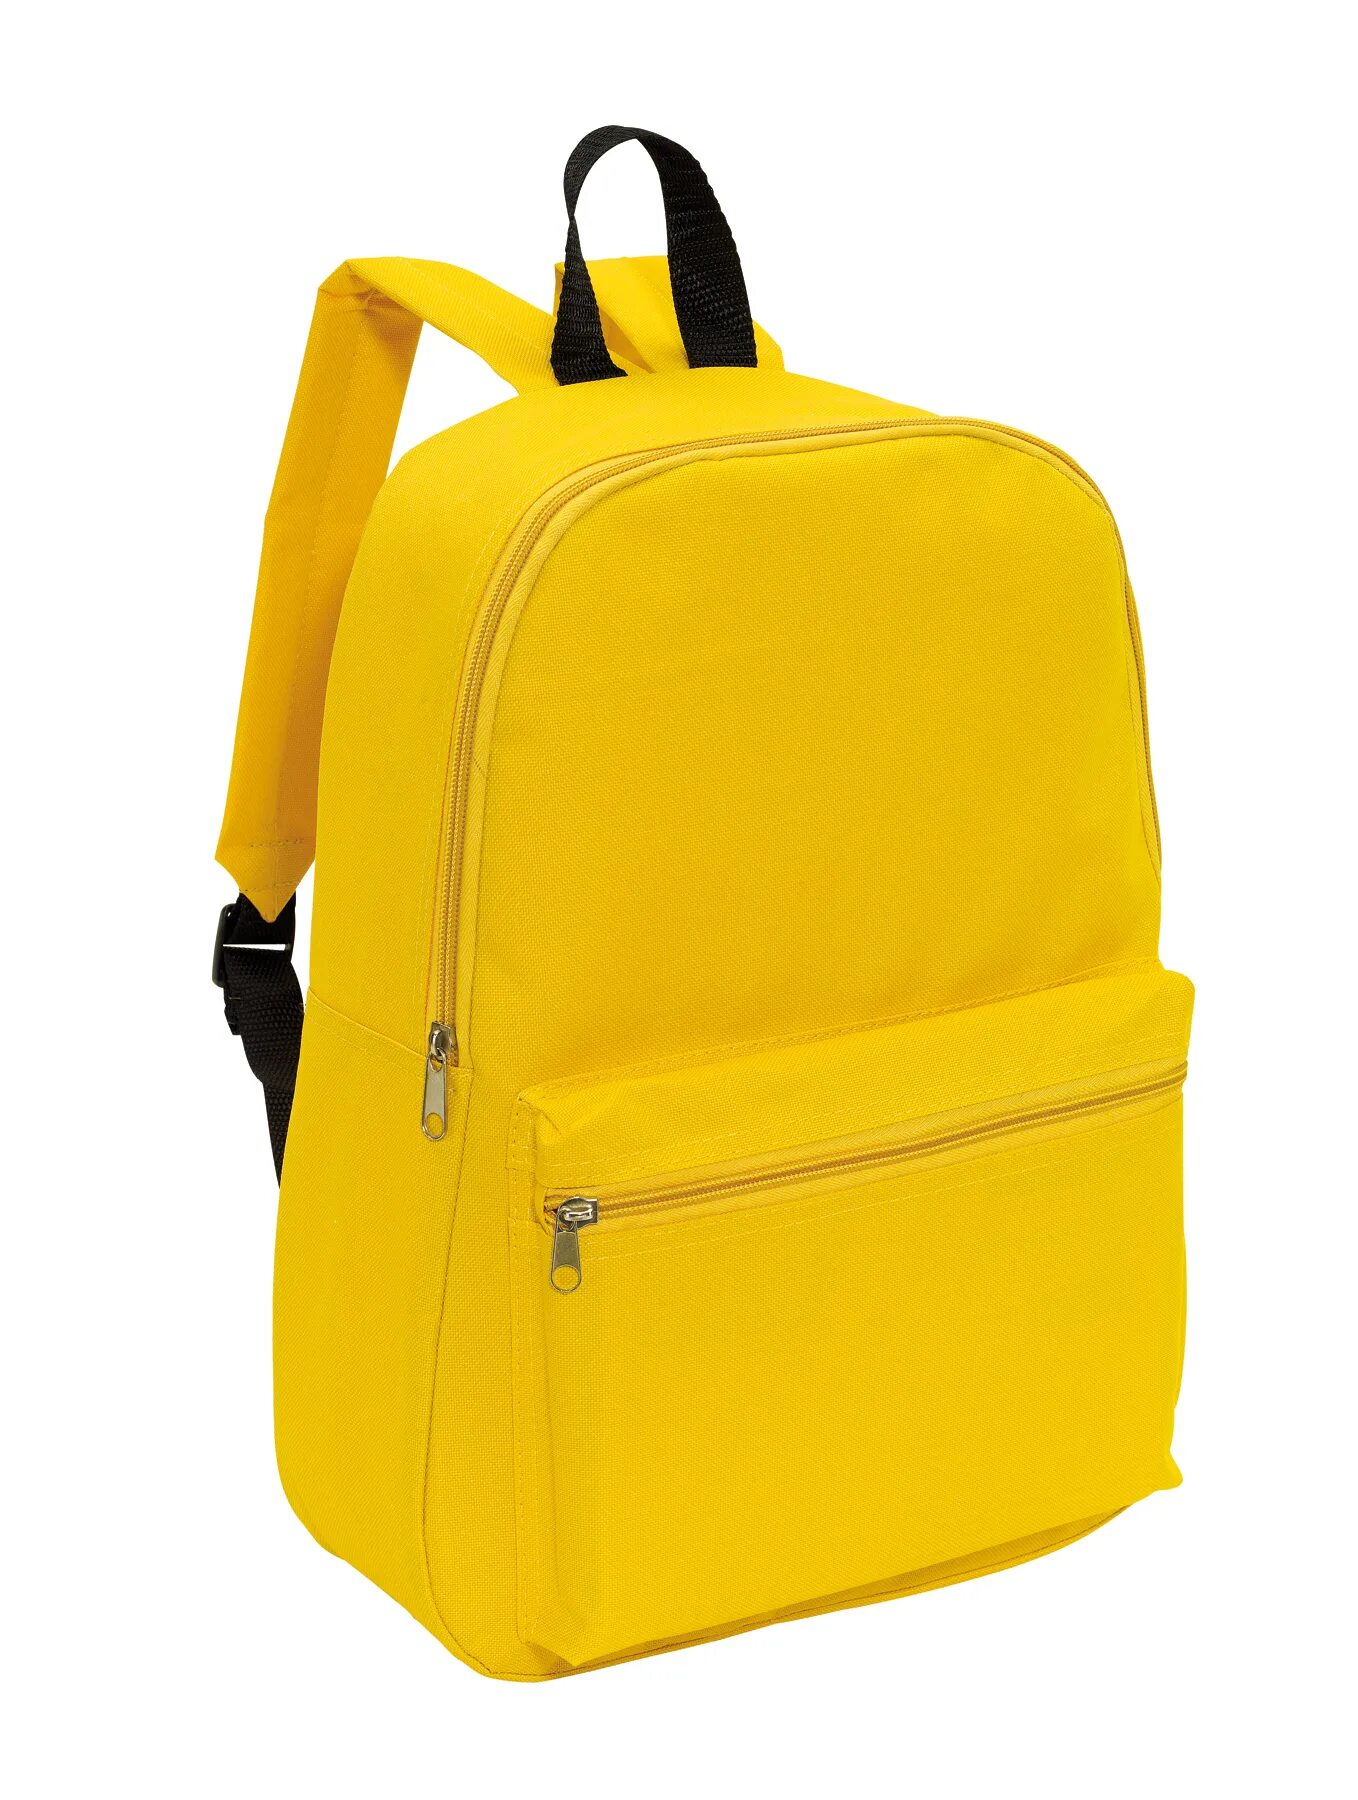 Желтый портфель. Рюкзак fram Ош 100 желтый. Рюкзак желтый ДНС. Желтый рюкзак мужской.